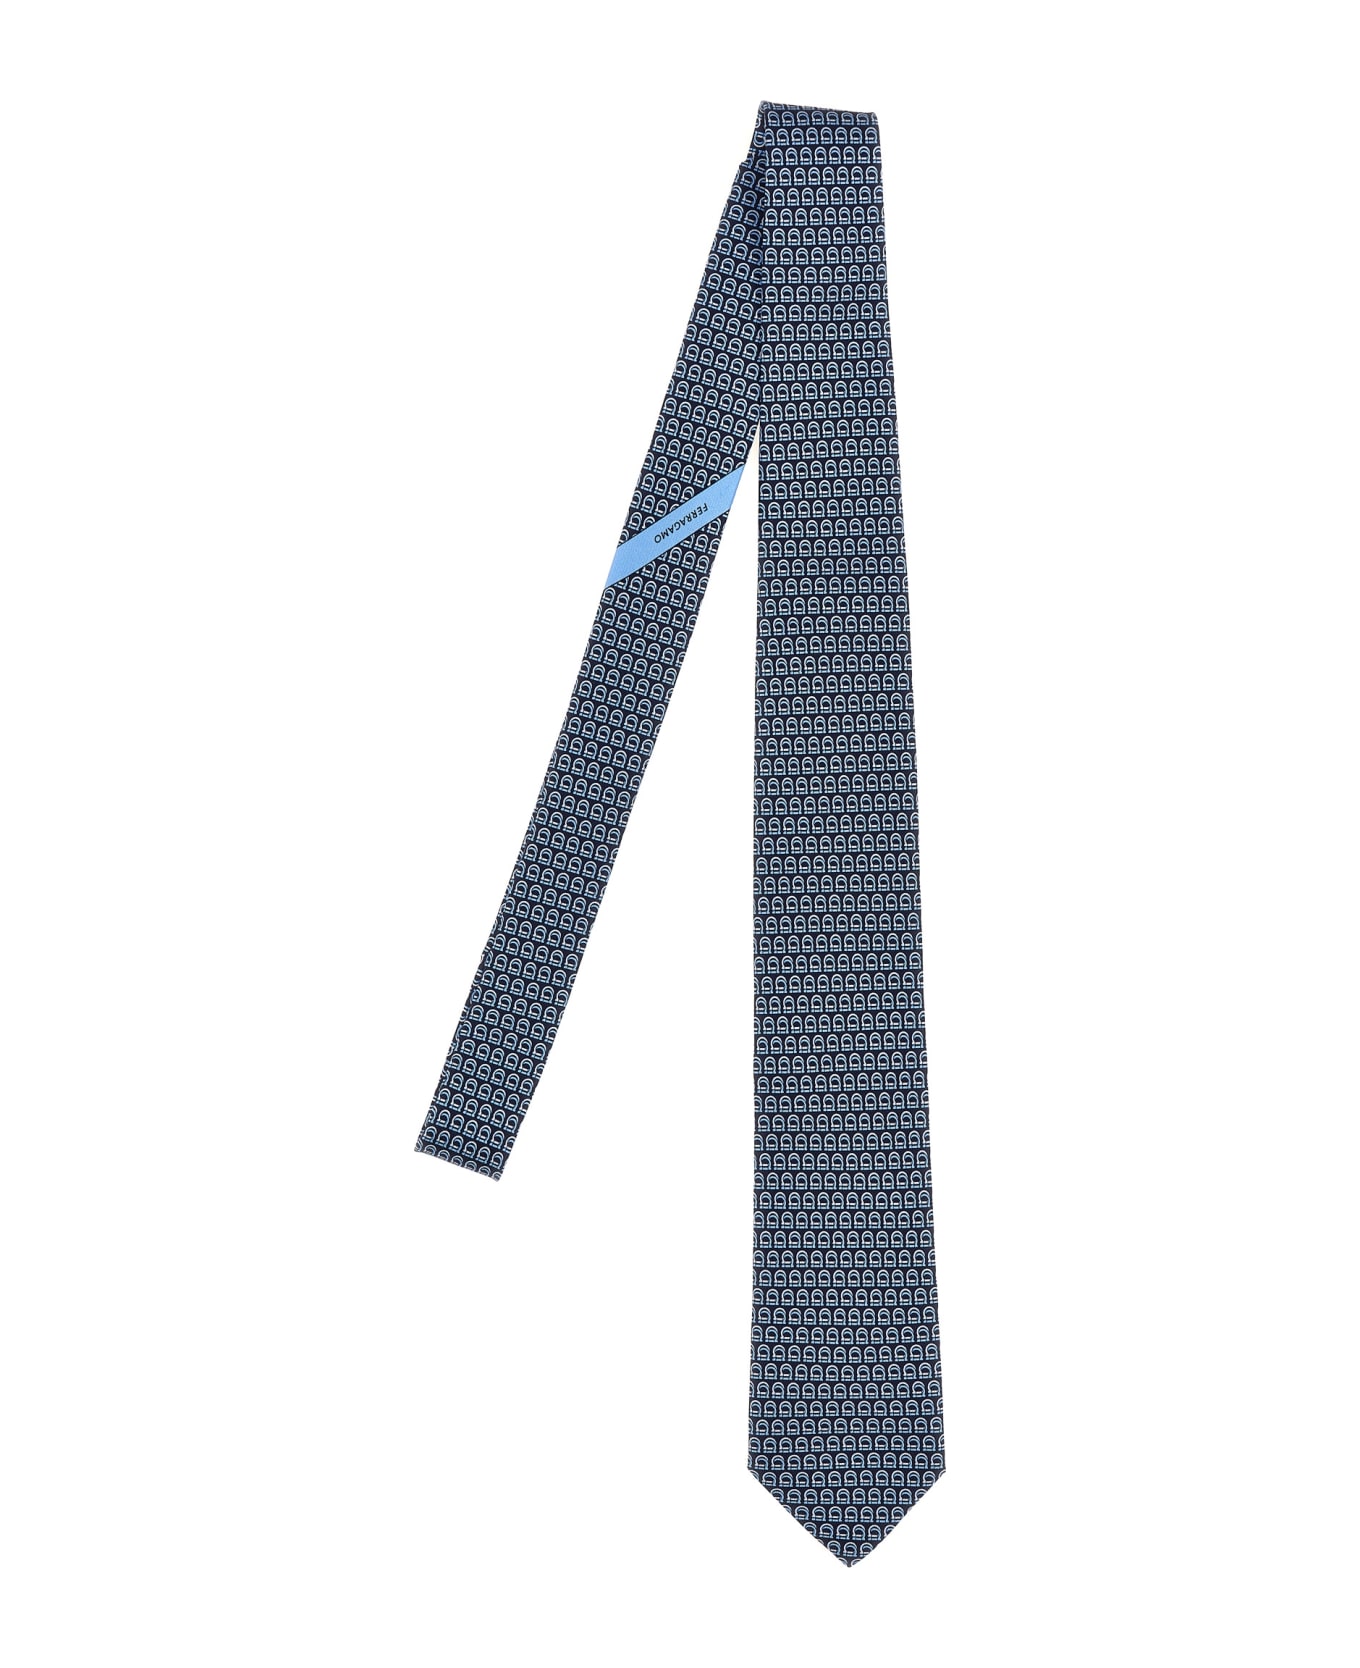 Ferragamo 'gancini' Tie - Blue ネクタイ